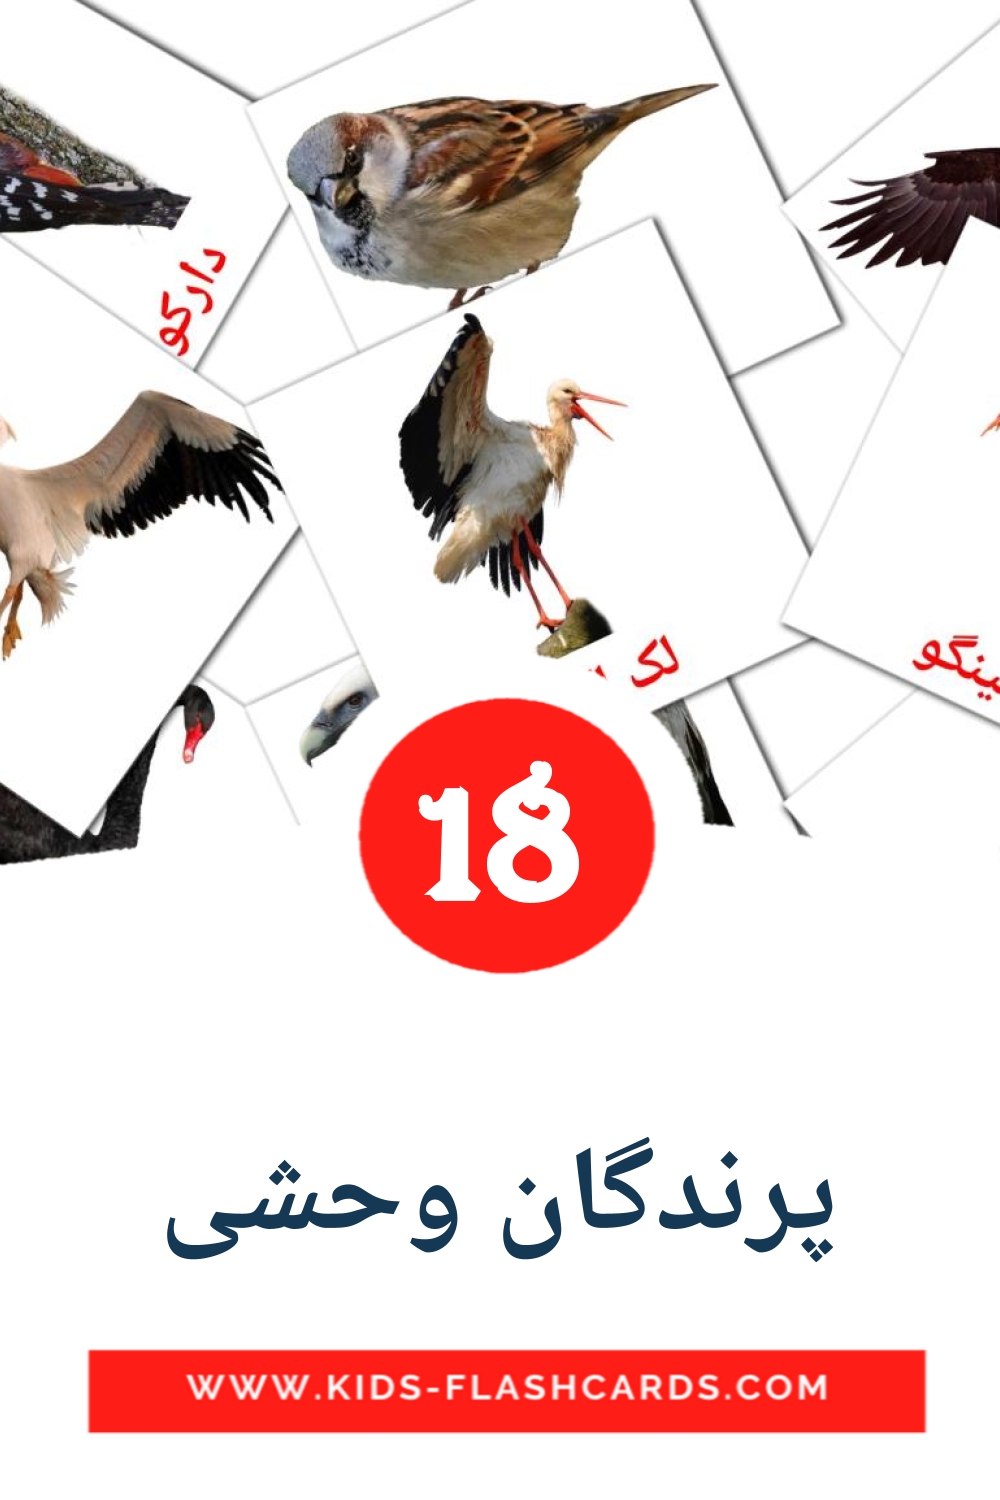 18 Cartões com Imagens de پرندگان وحشی para Jardim de Infância em persa